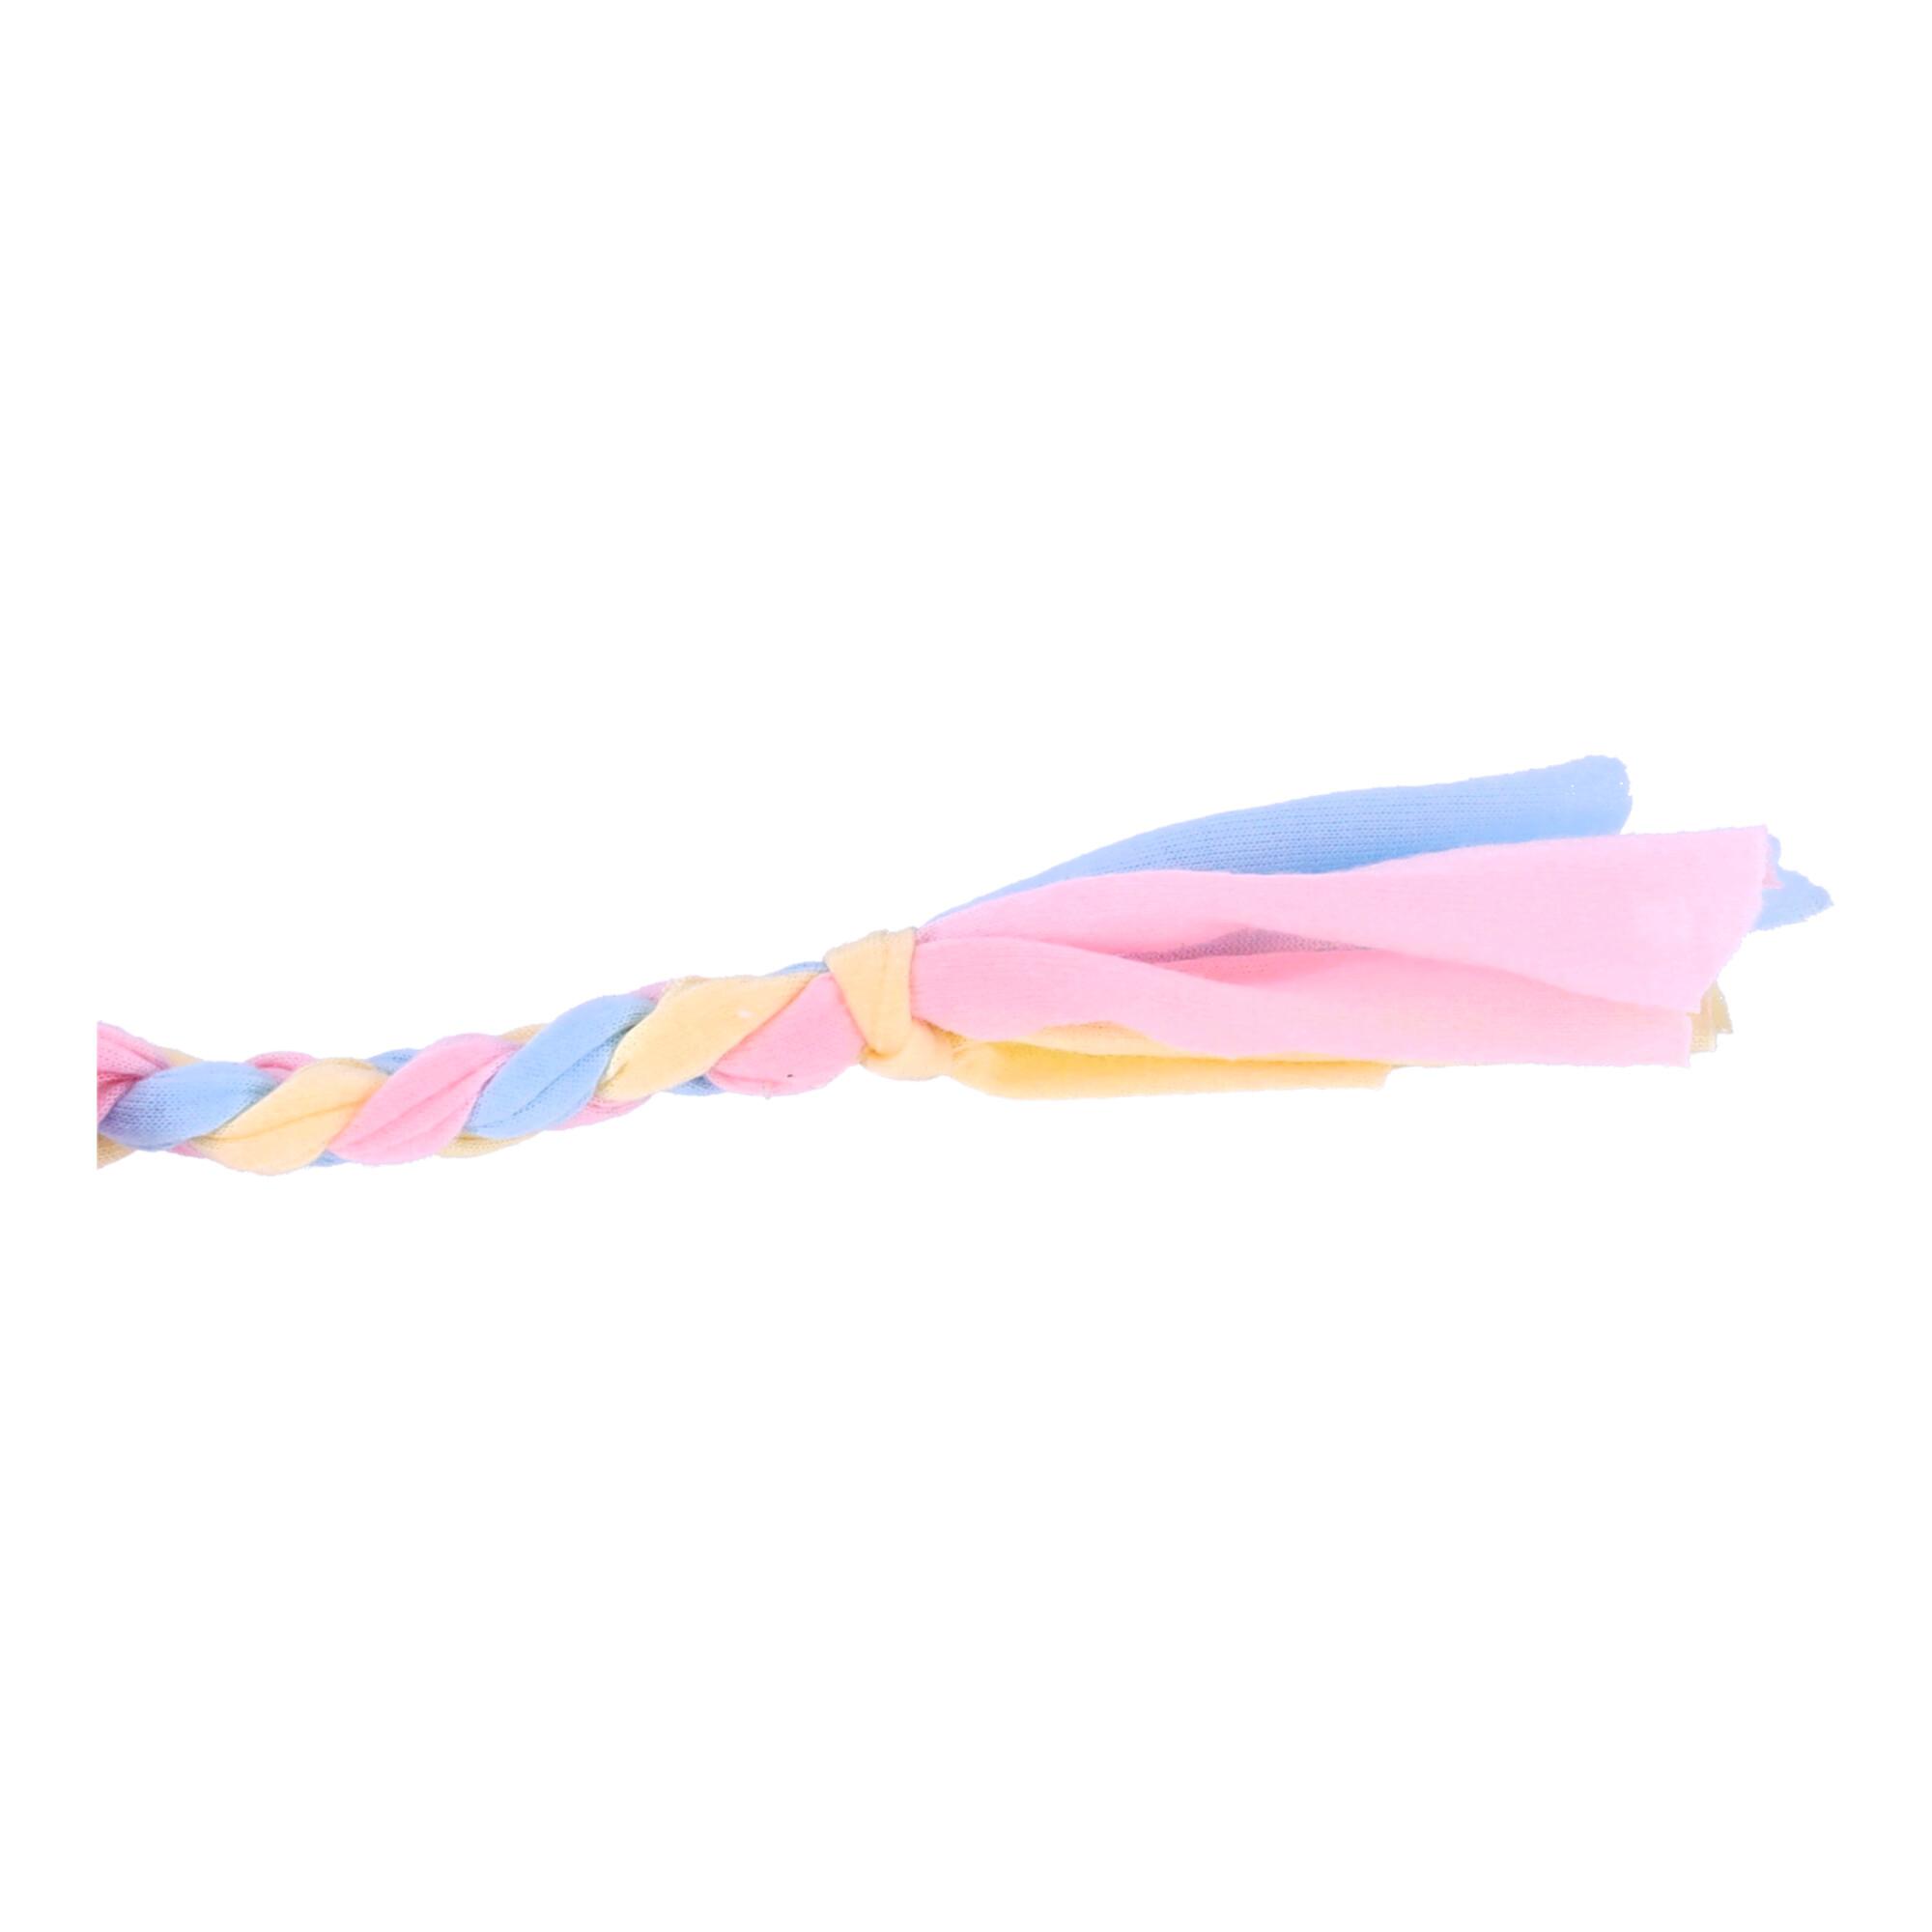 Kolorowa zabawka dla psa - gryzak ze sznurkiem, różowa